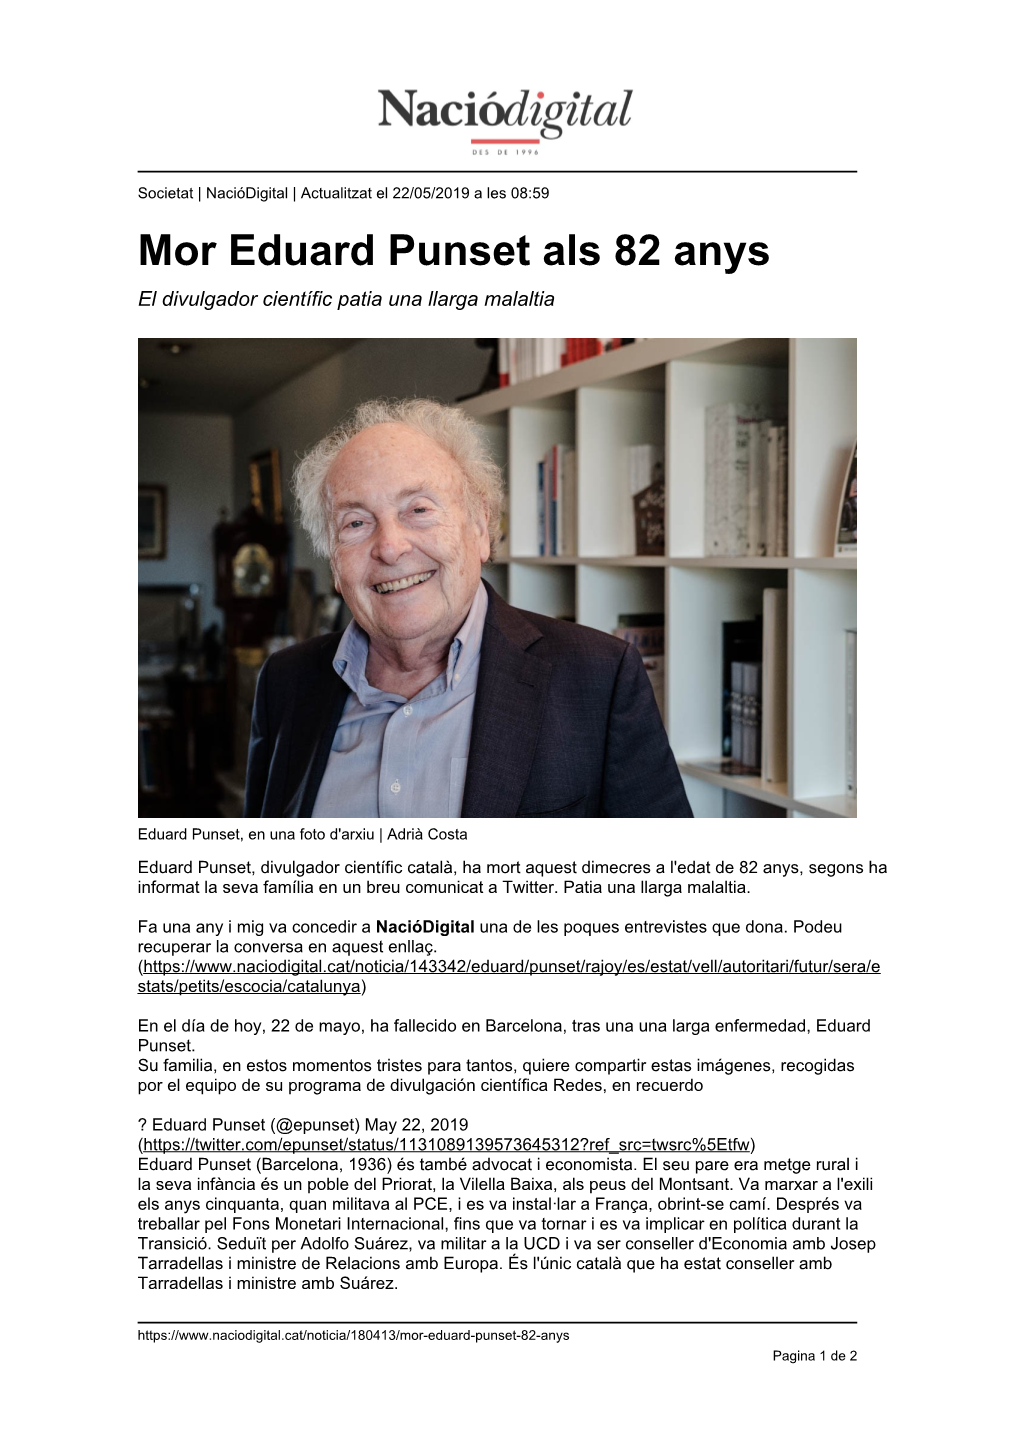 Mor Eduard Punset Als 82 Anys El Divulgador Científic Patia Una Llarga Malaltia